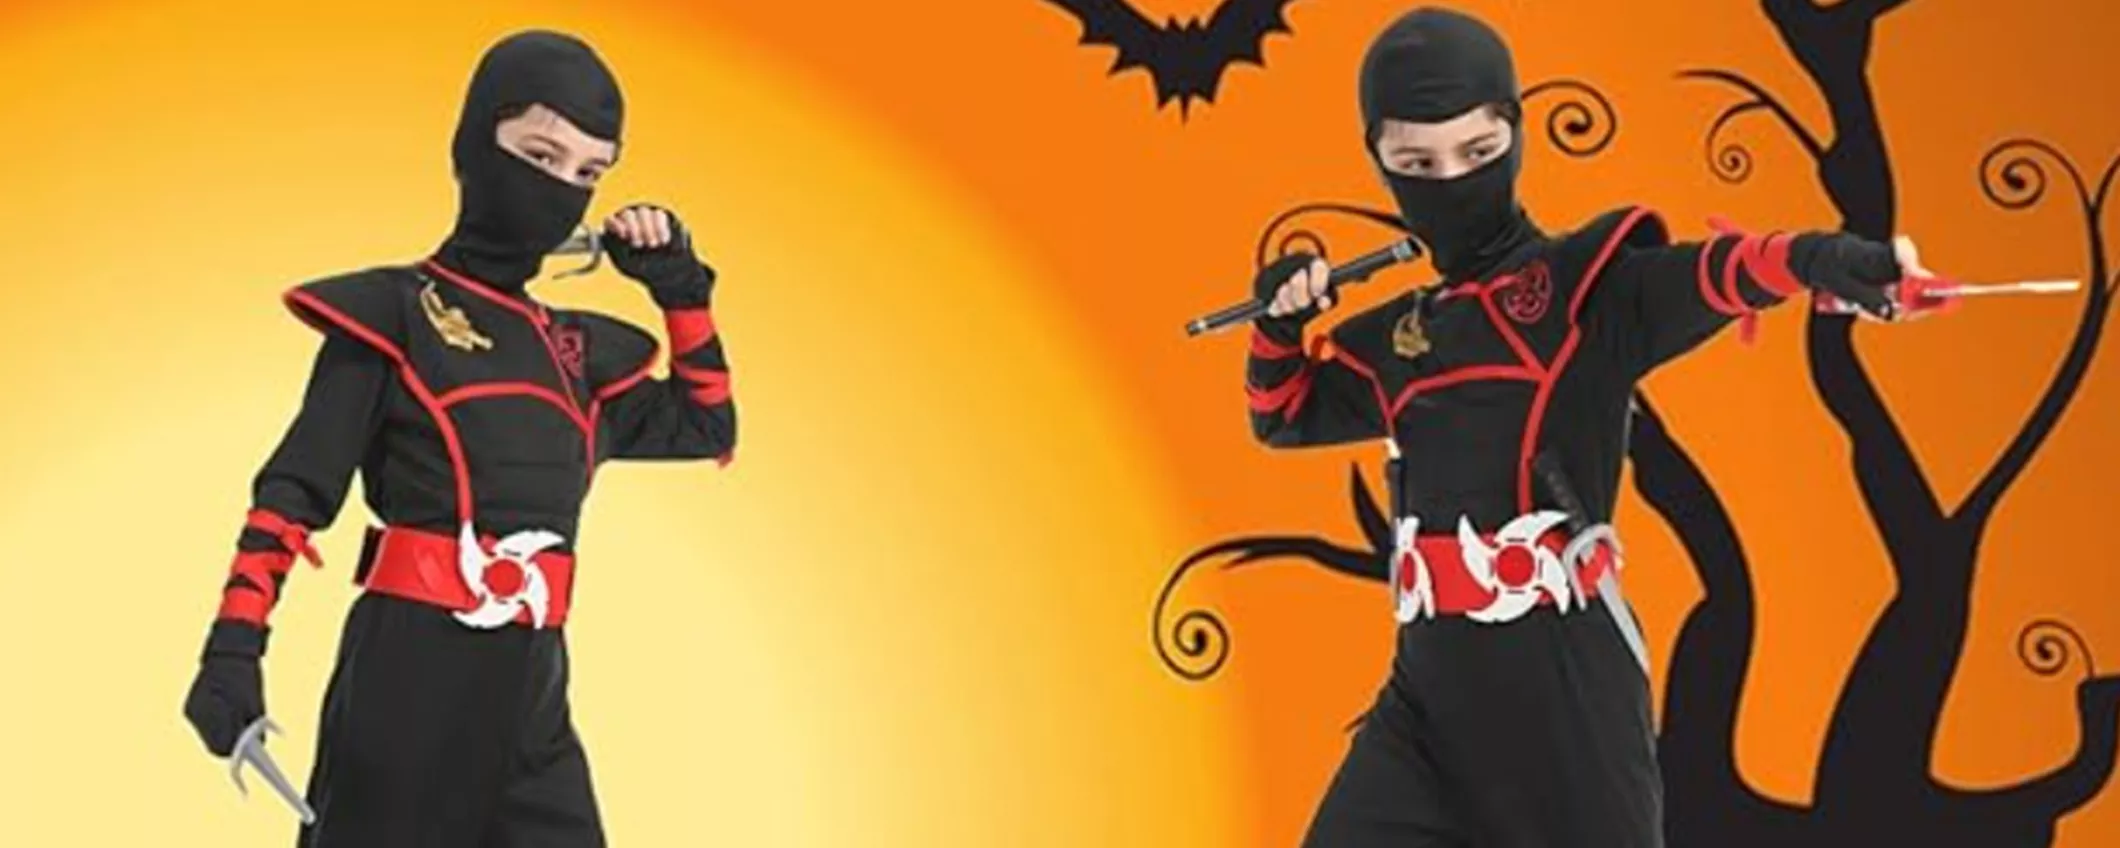 Costume di carnevale per bambini Ninja a PREZZO STRACCIATO su Amazon (COUPON in pagina)